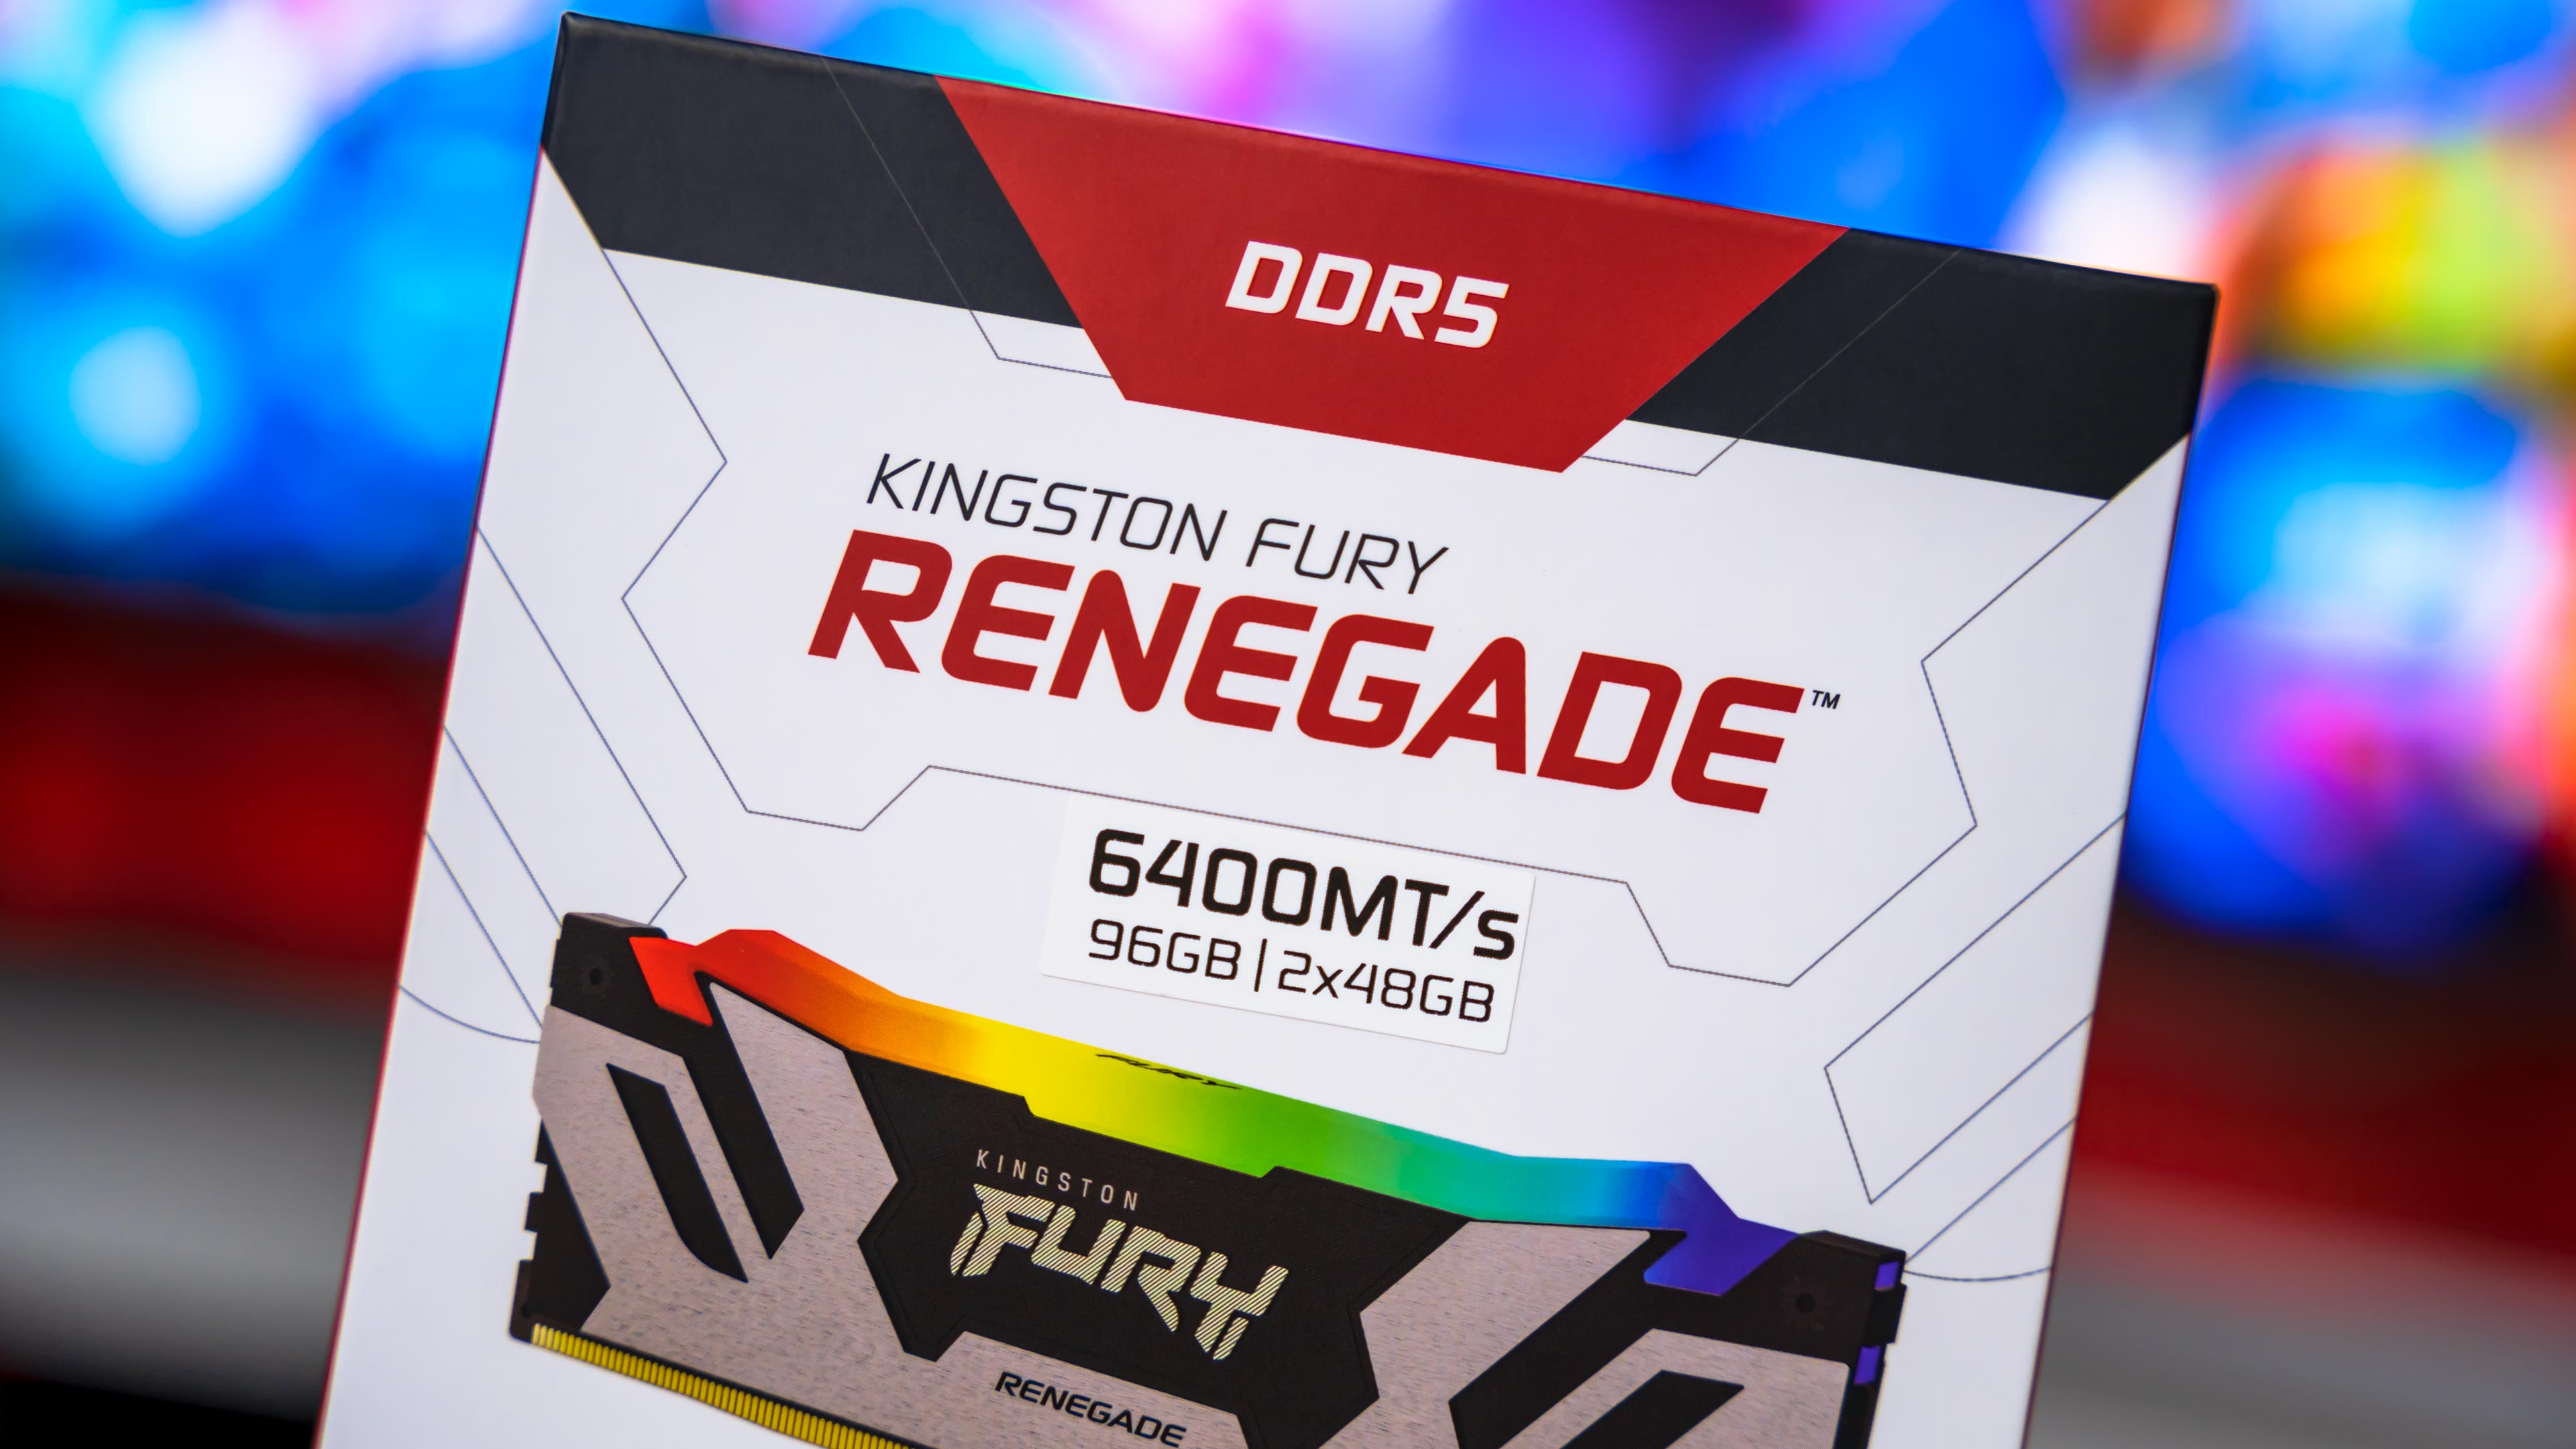 Kingston Fury Renegade RGB DDR5 6400MHz 2x48GB Box (2)